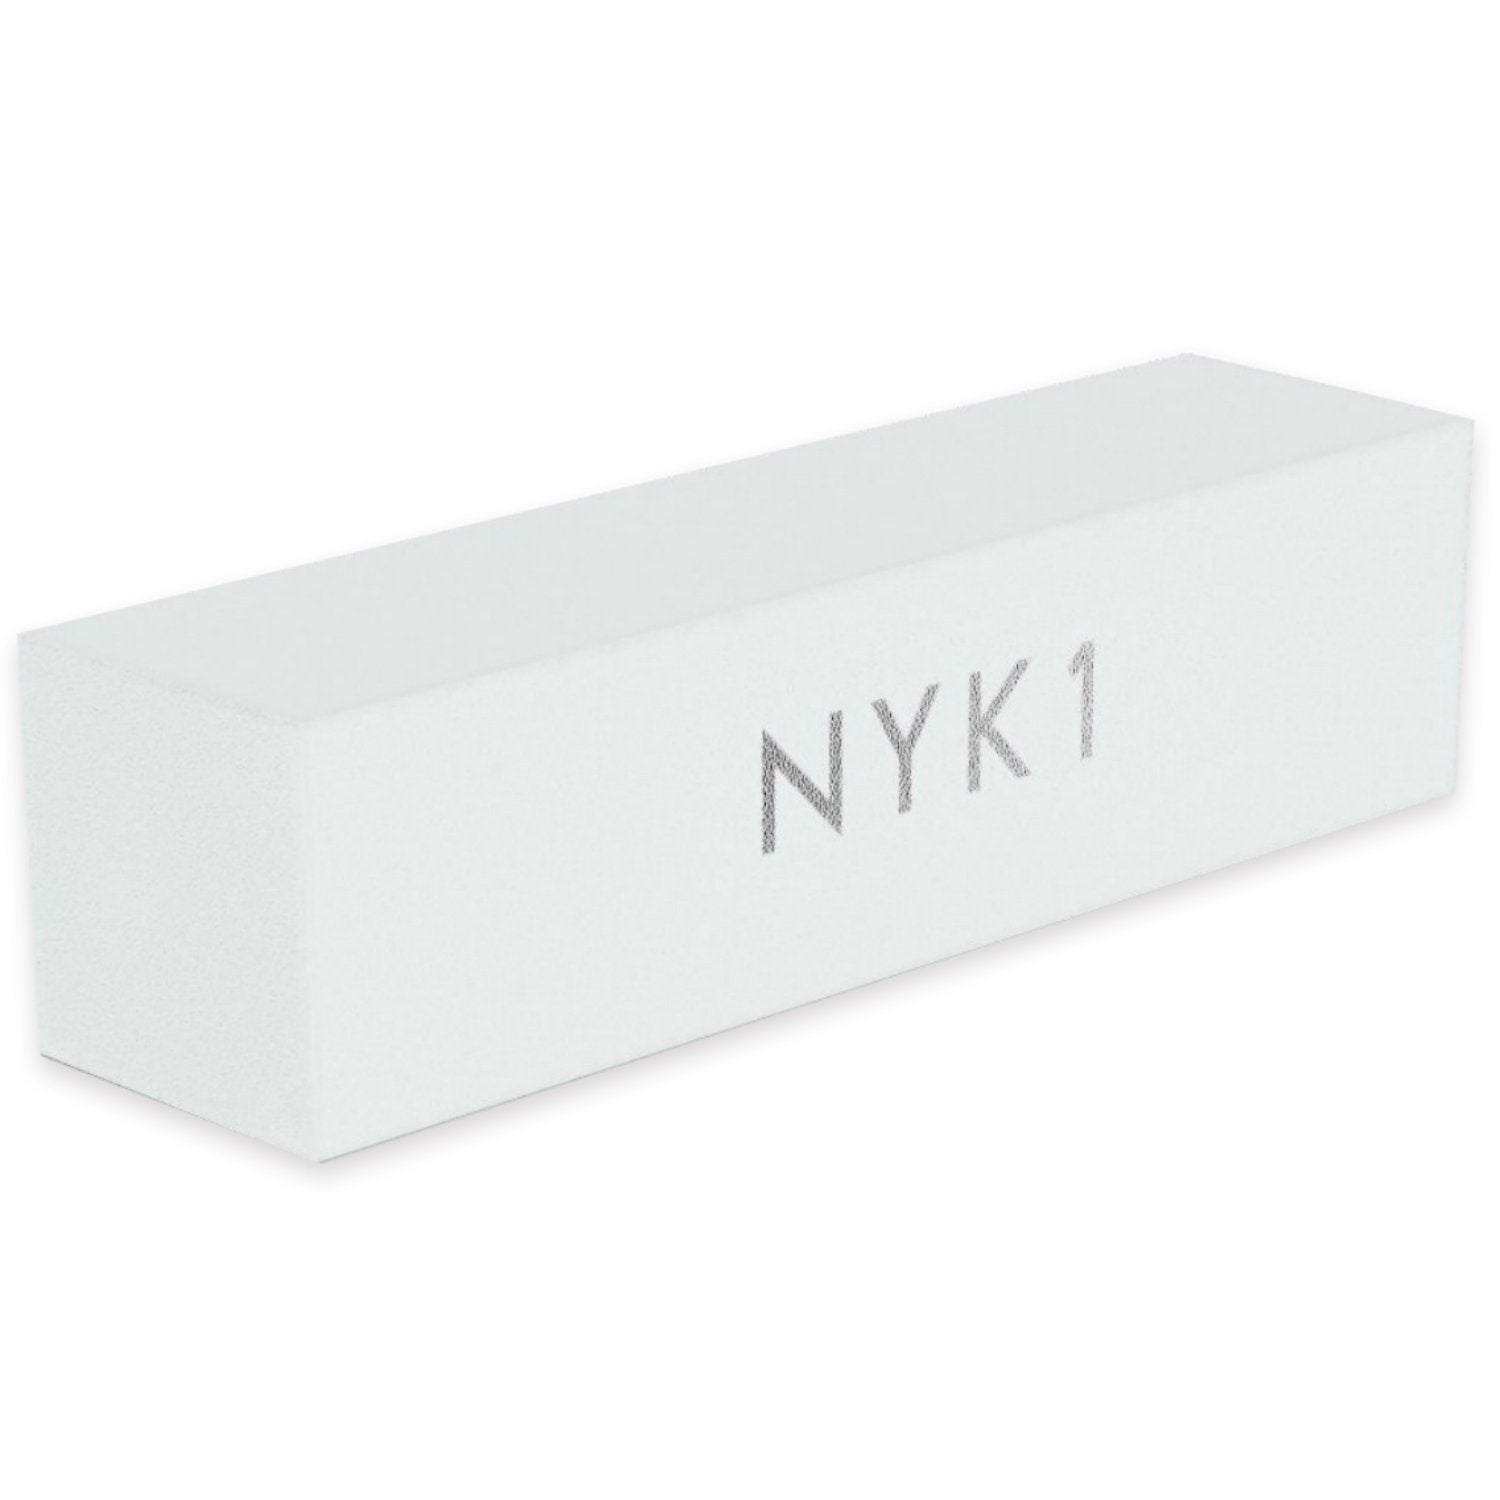 NYK1 White Acrylic Nail Buffer Buffing Sanding Block Files Salon Professional 